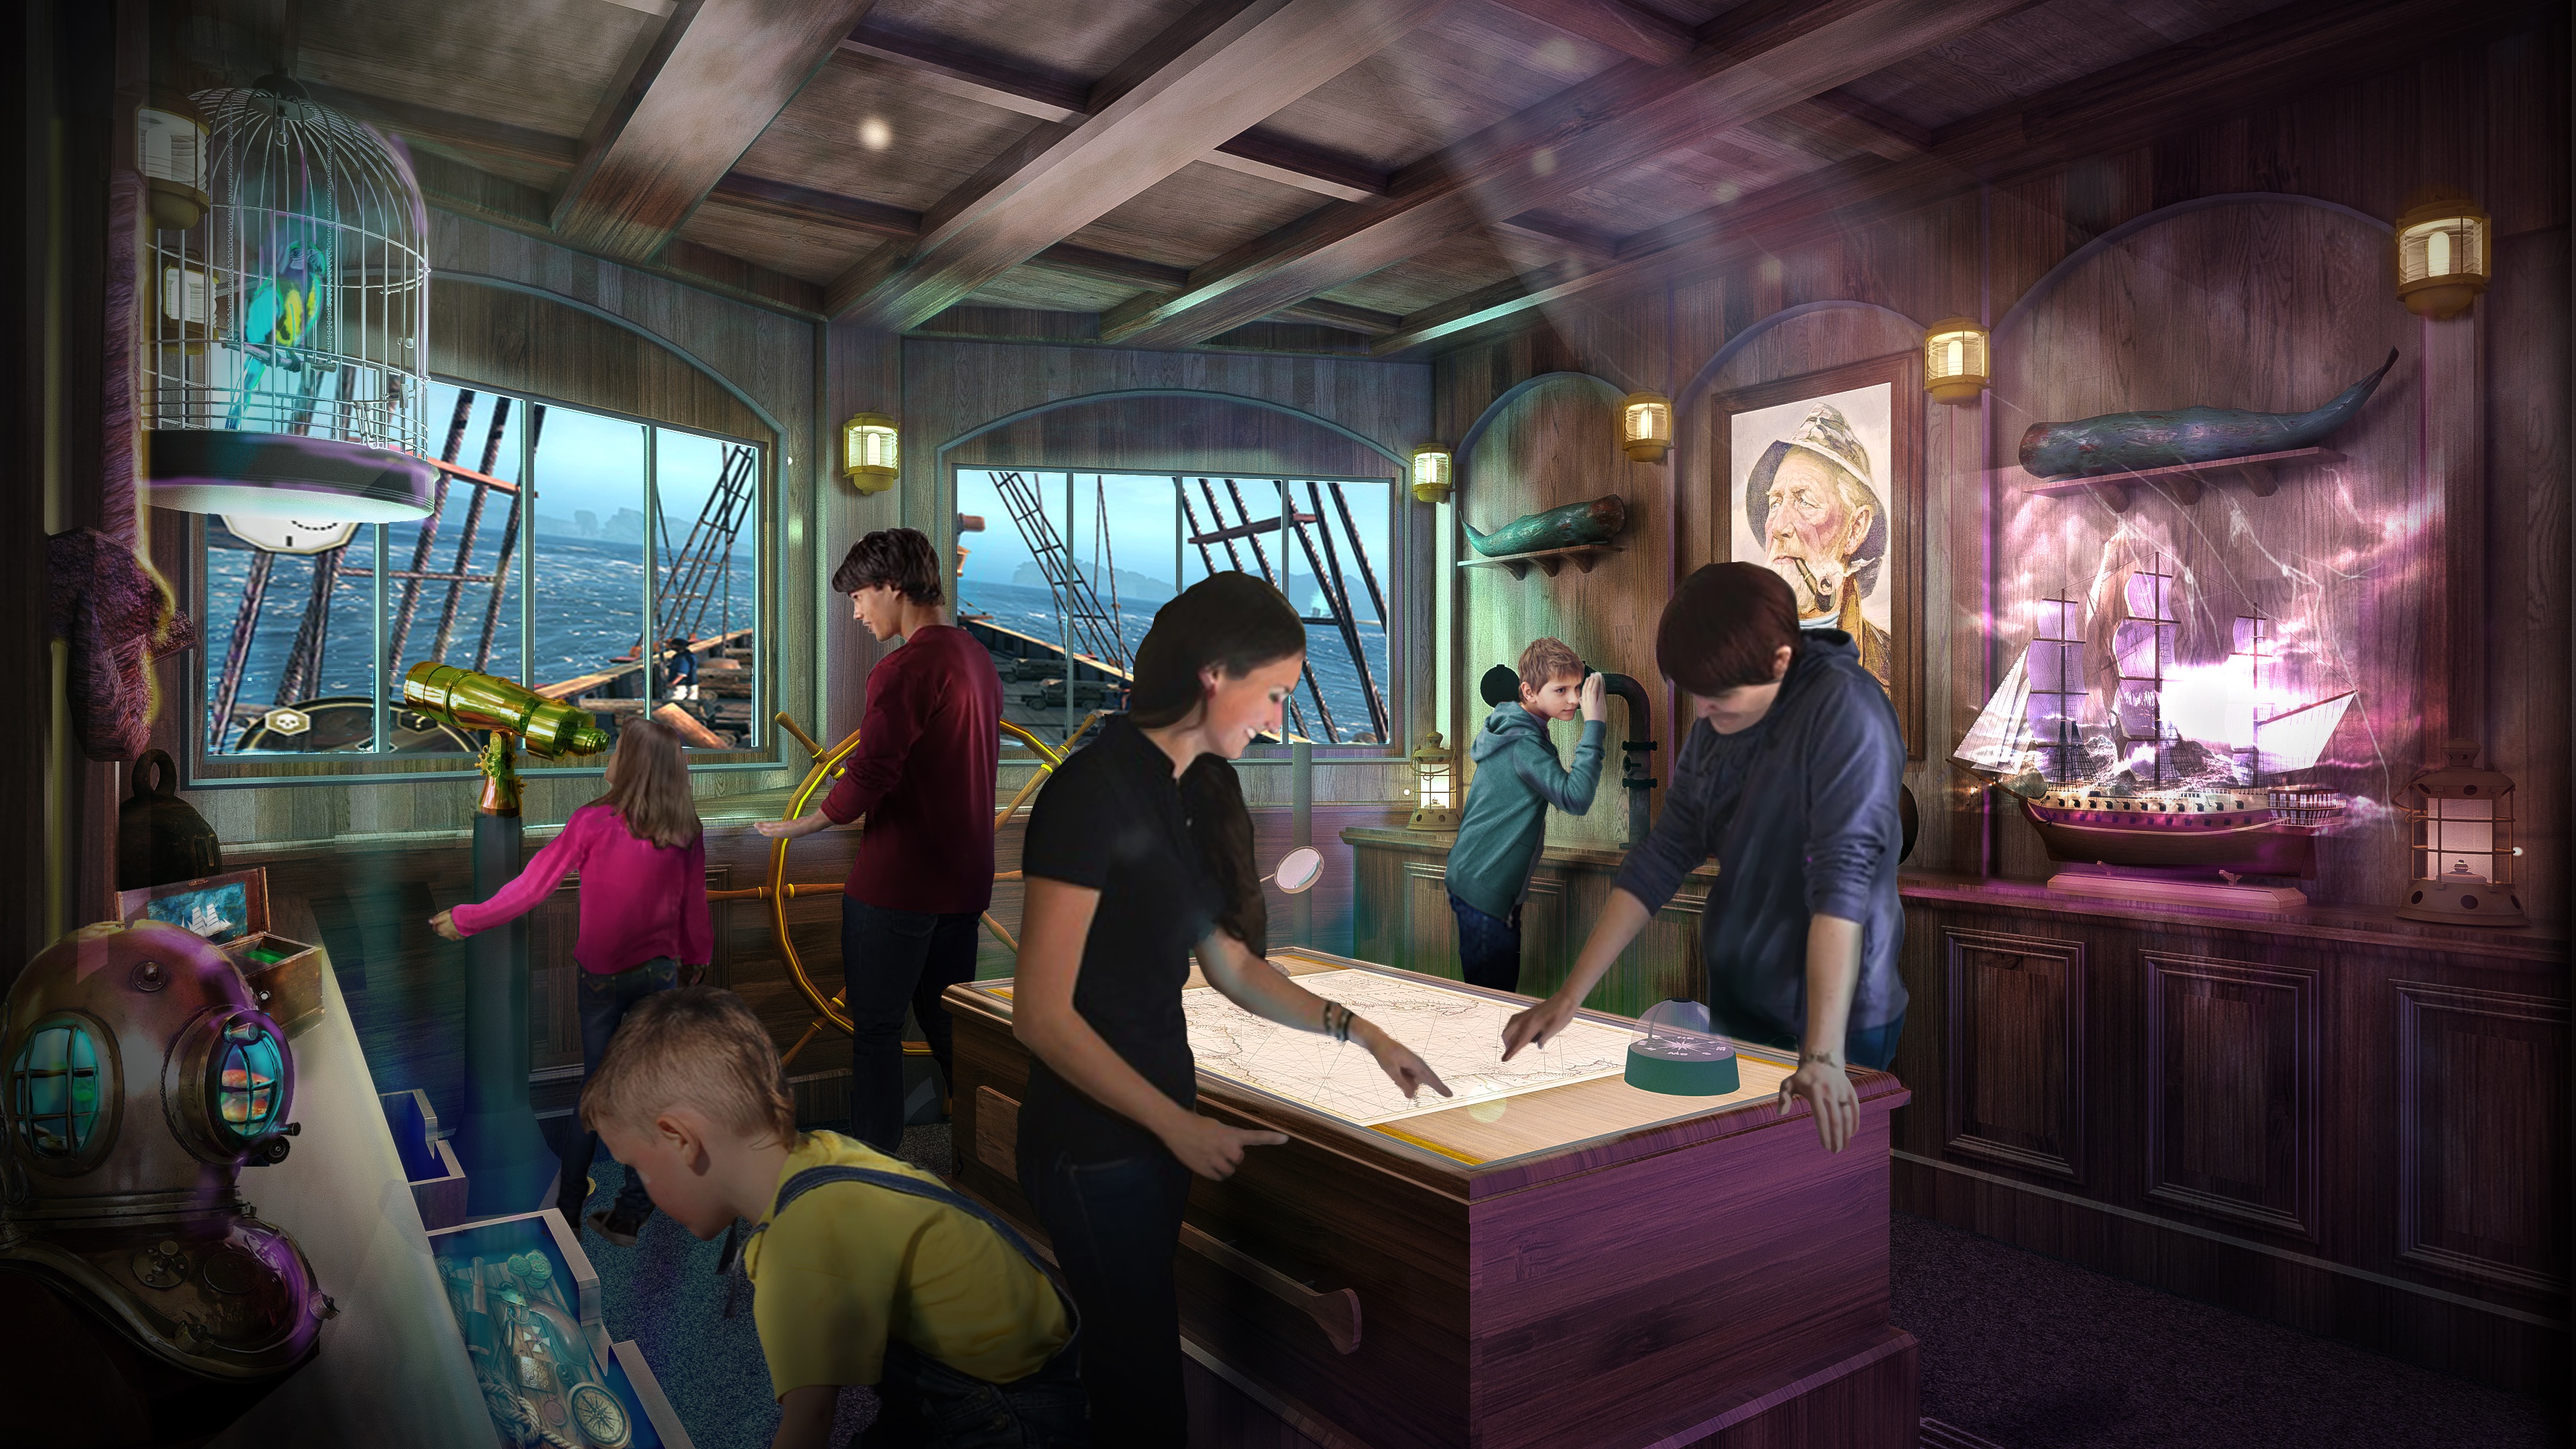 Phantom Bridge bietet Princess Cruises auf den Schiffs-Neubauten Sky Princess (Jungfernfahrt Oktober 2019) und Enchanted Princess (Juni 2020) erstmals ein Escape Room-Spiel für Passagiere aller Altersklassen.